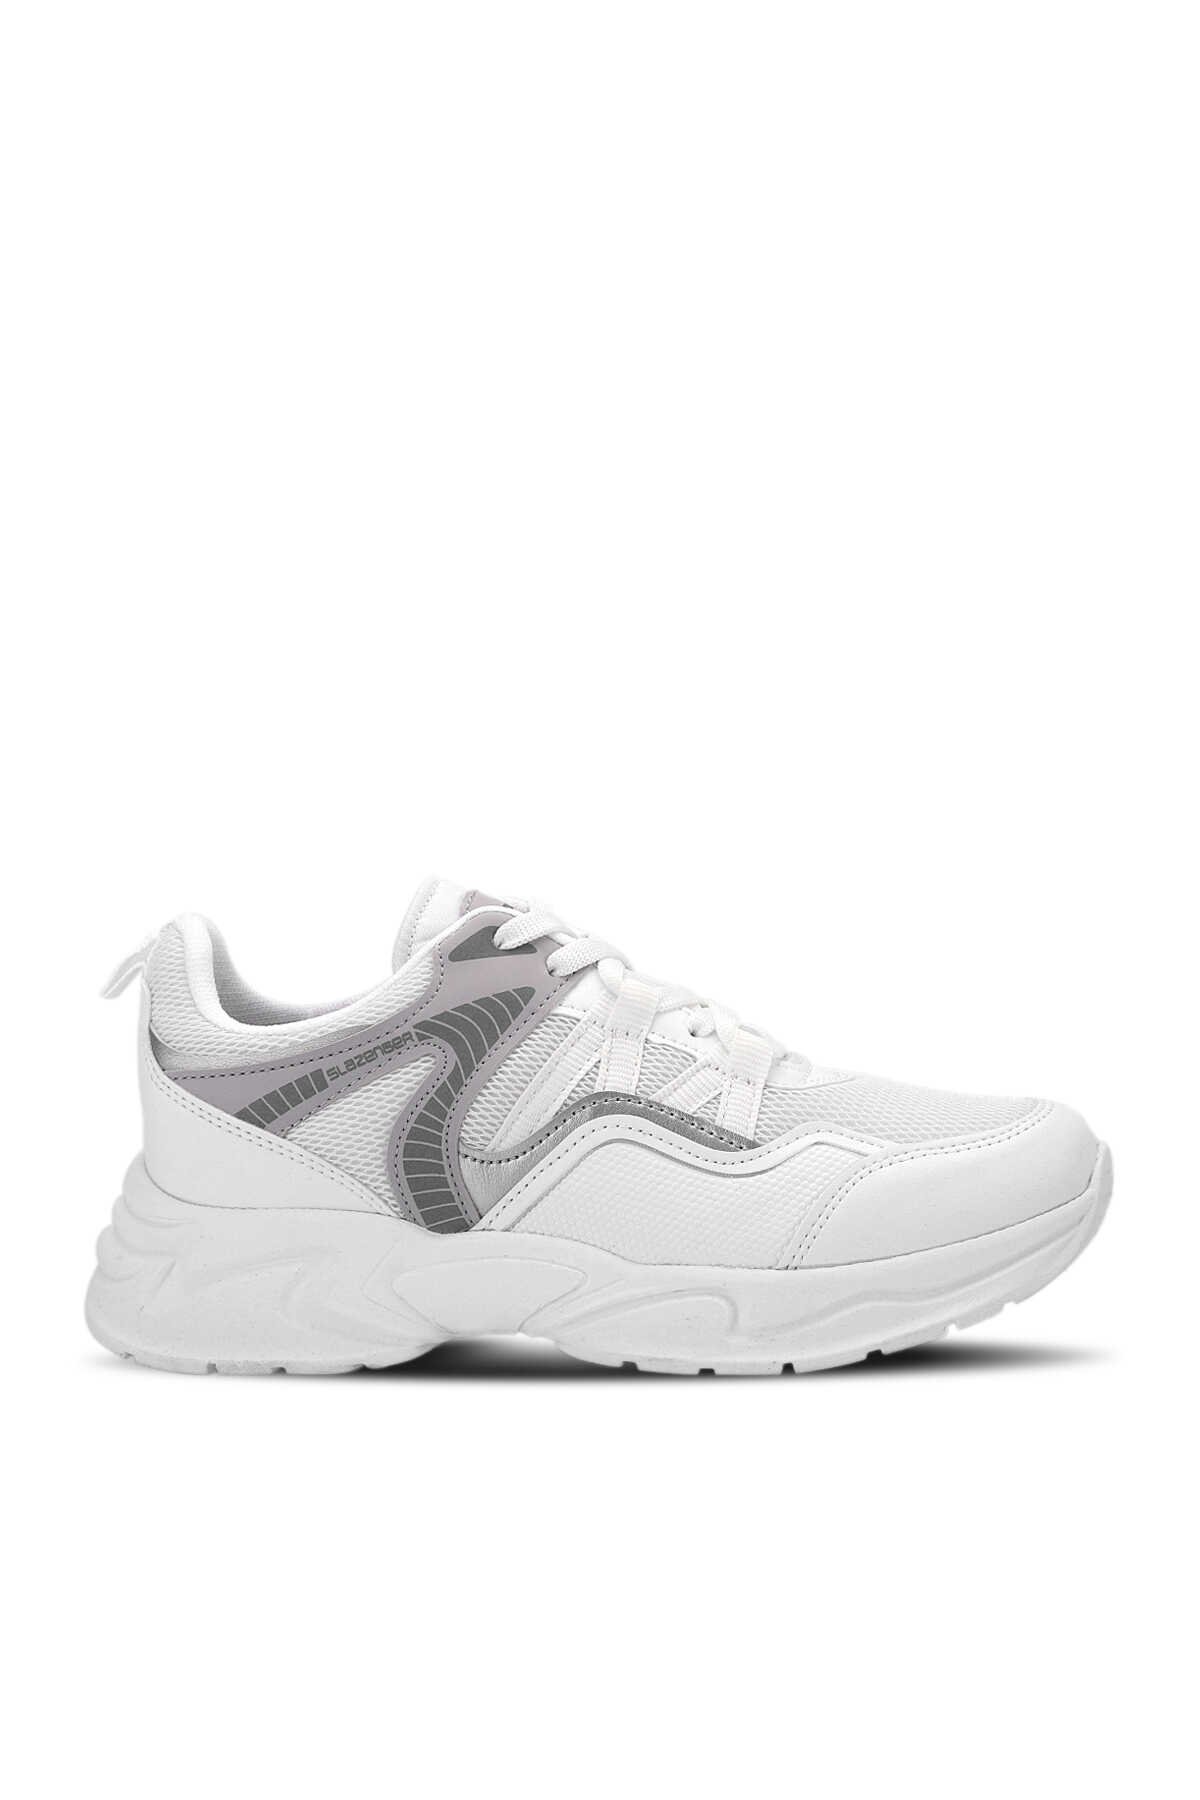 Slazenger - Slazenger KARME I Sneaker Kadın Ayakkabı Beyaz / Gümüş